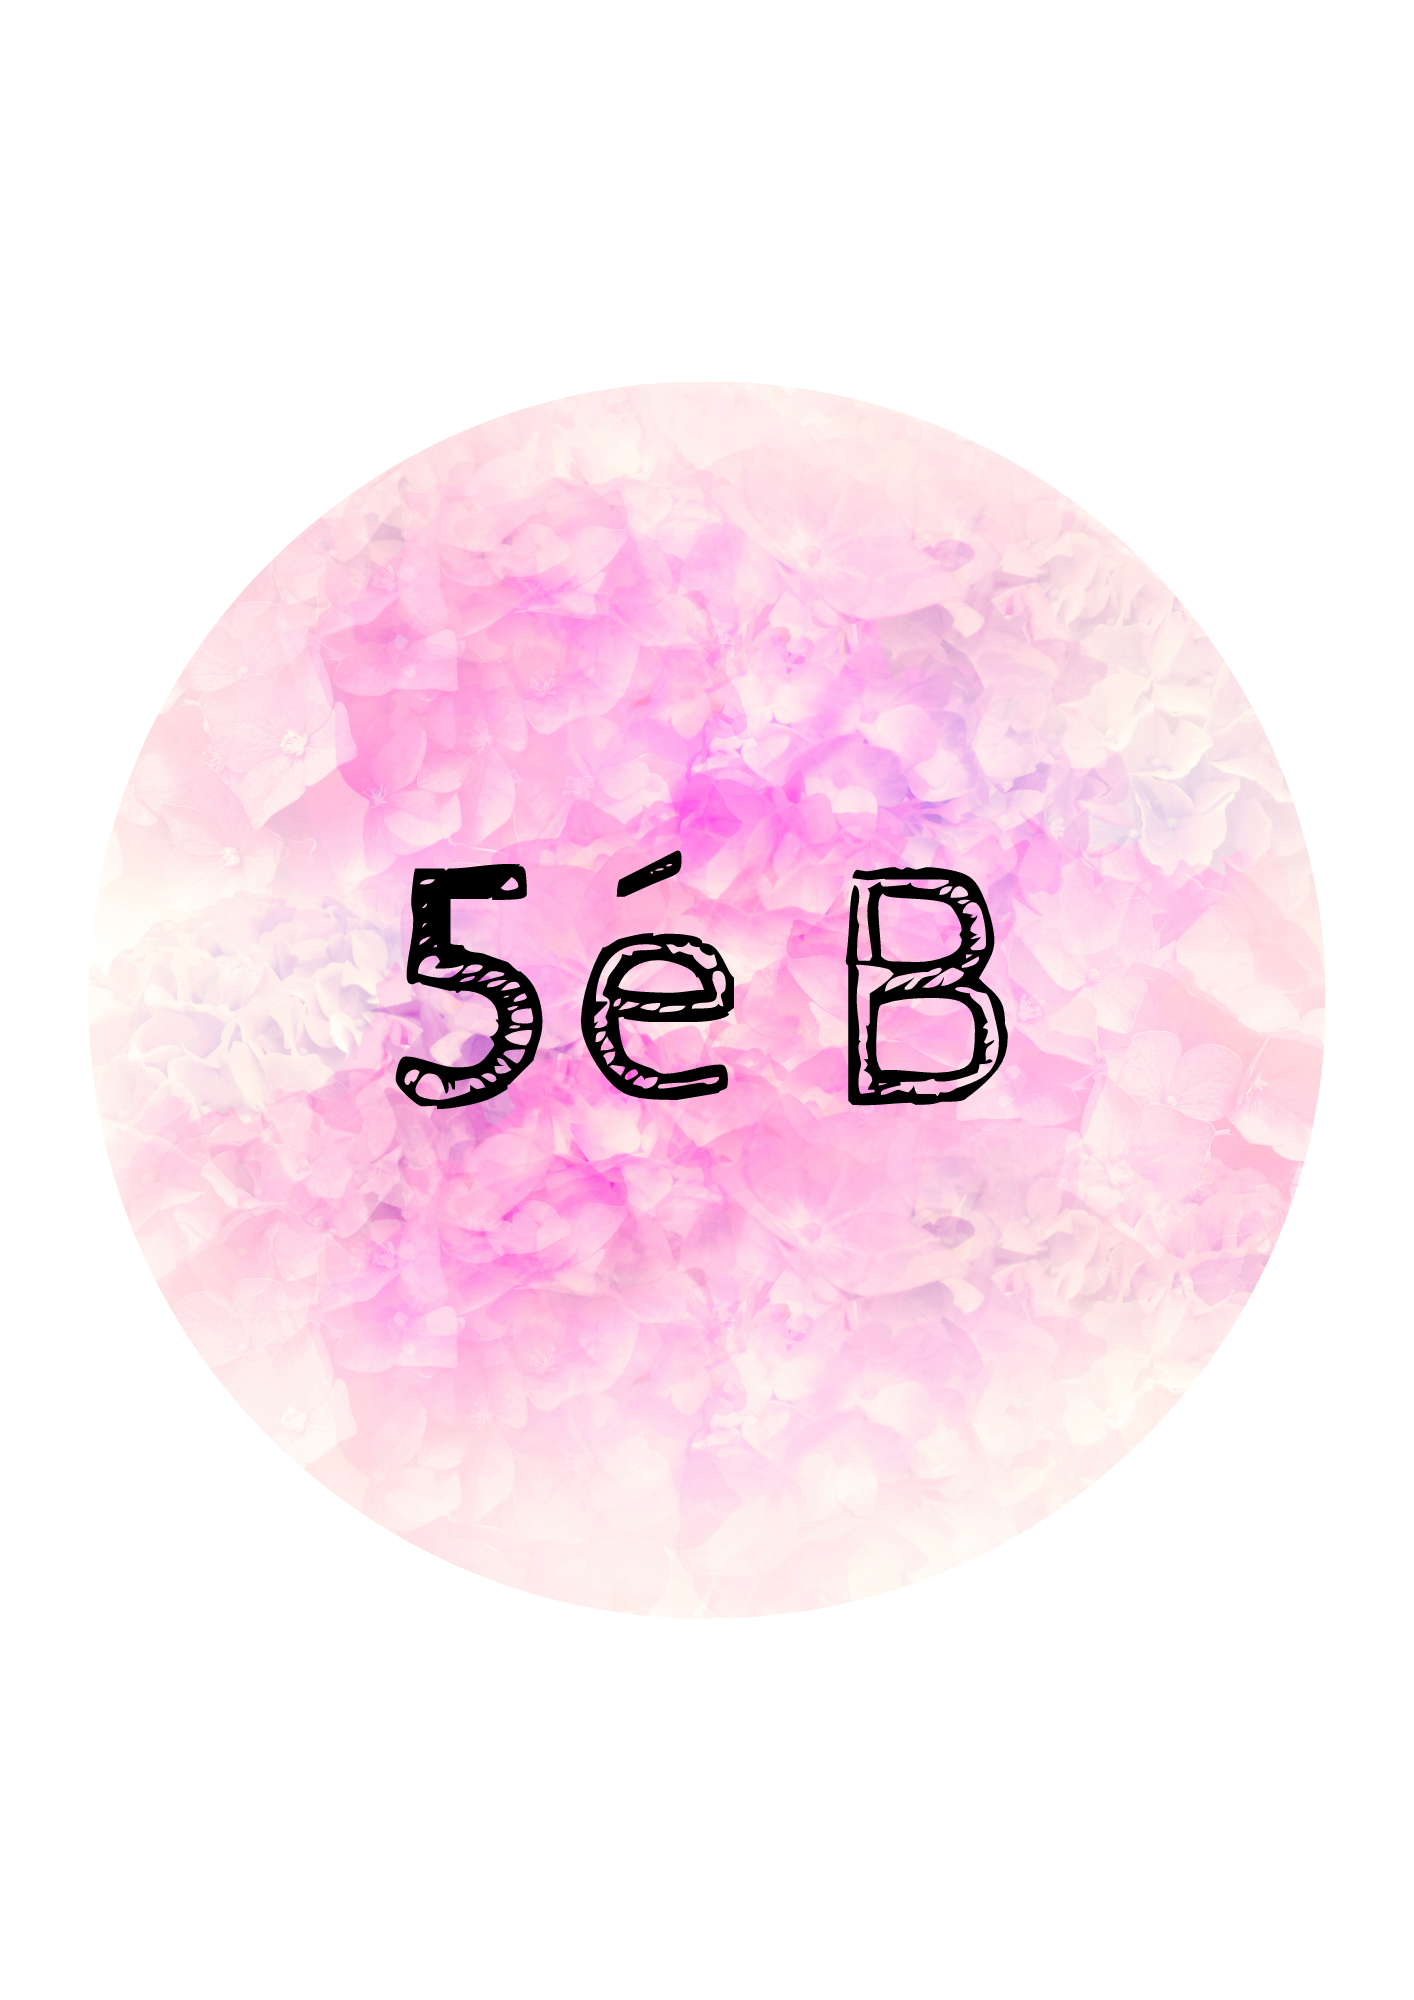 5é B